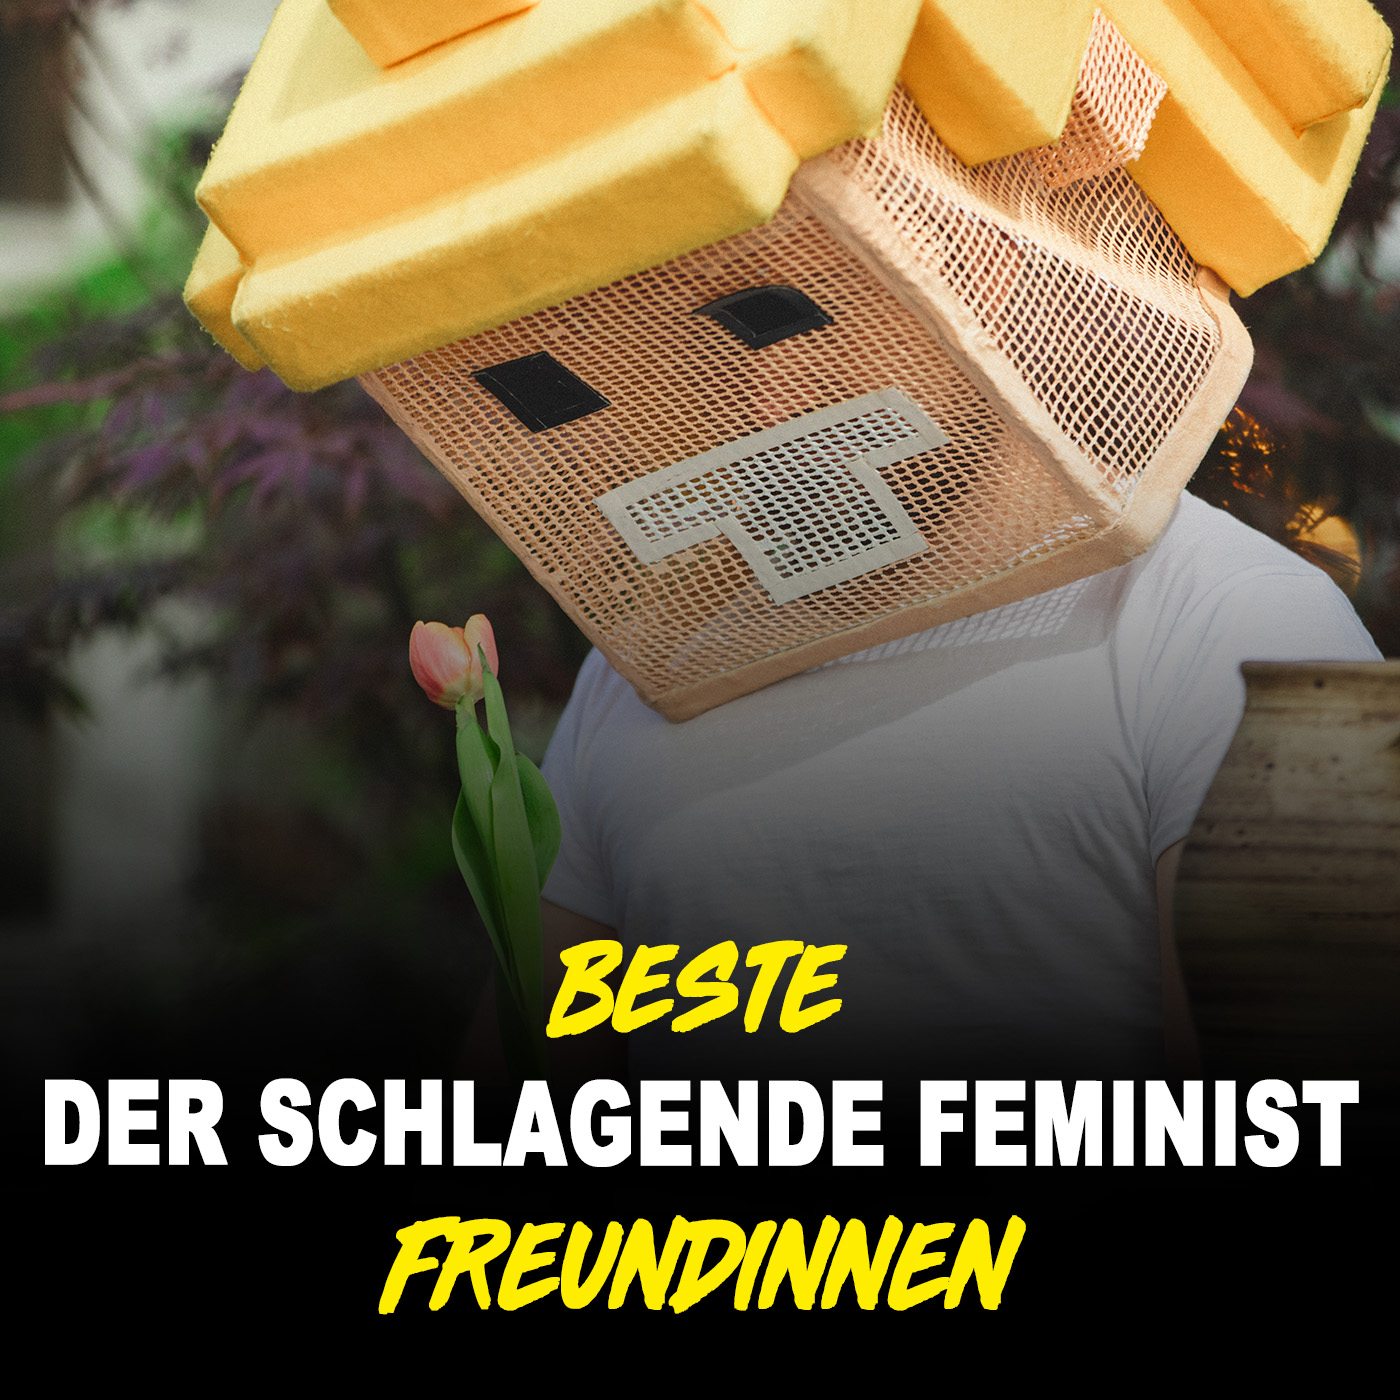 Der schlagende Feminist